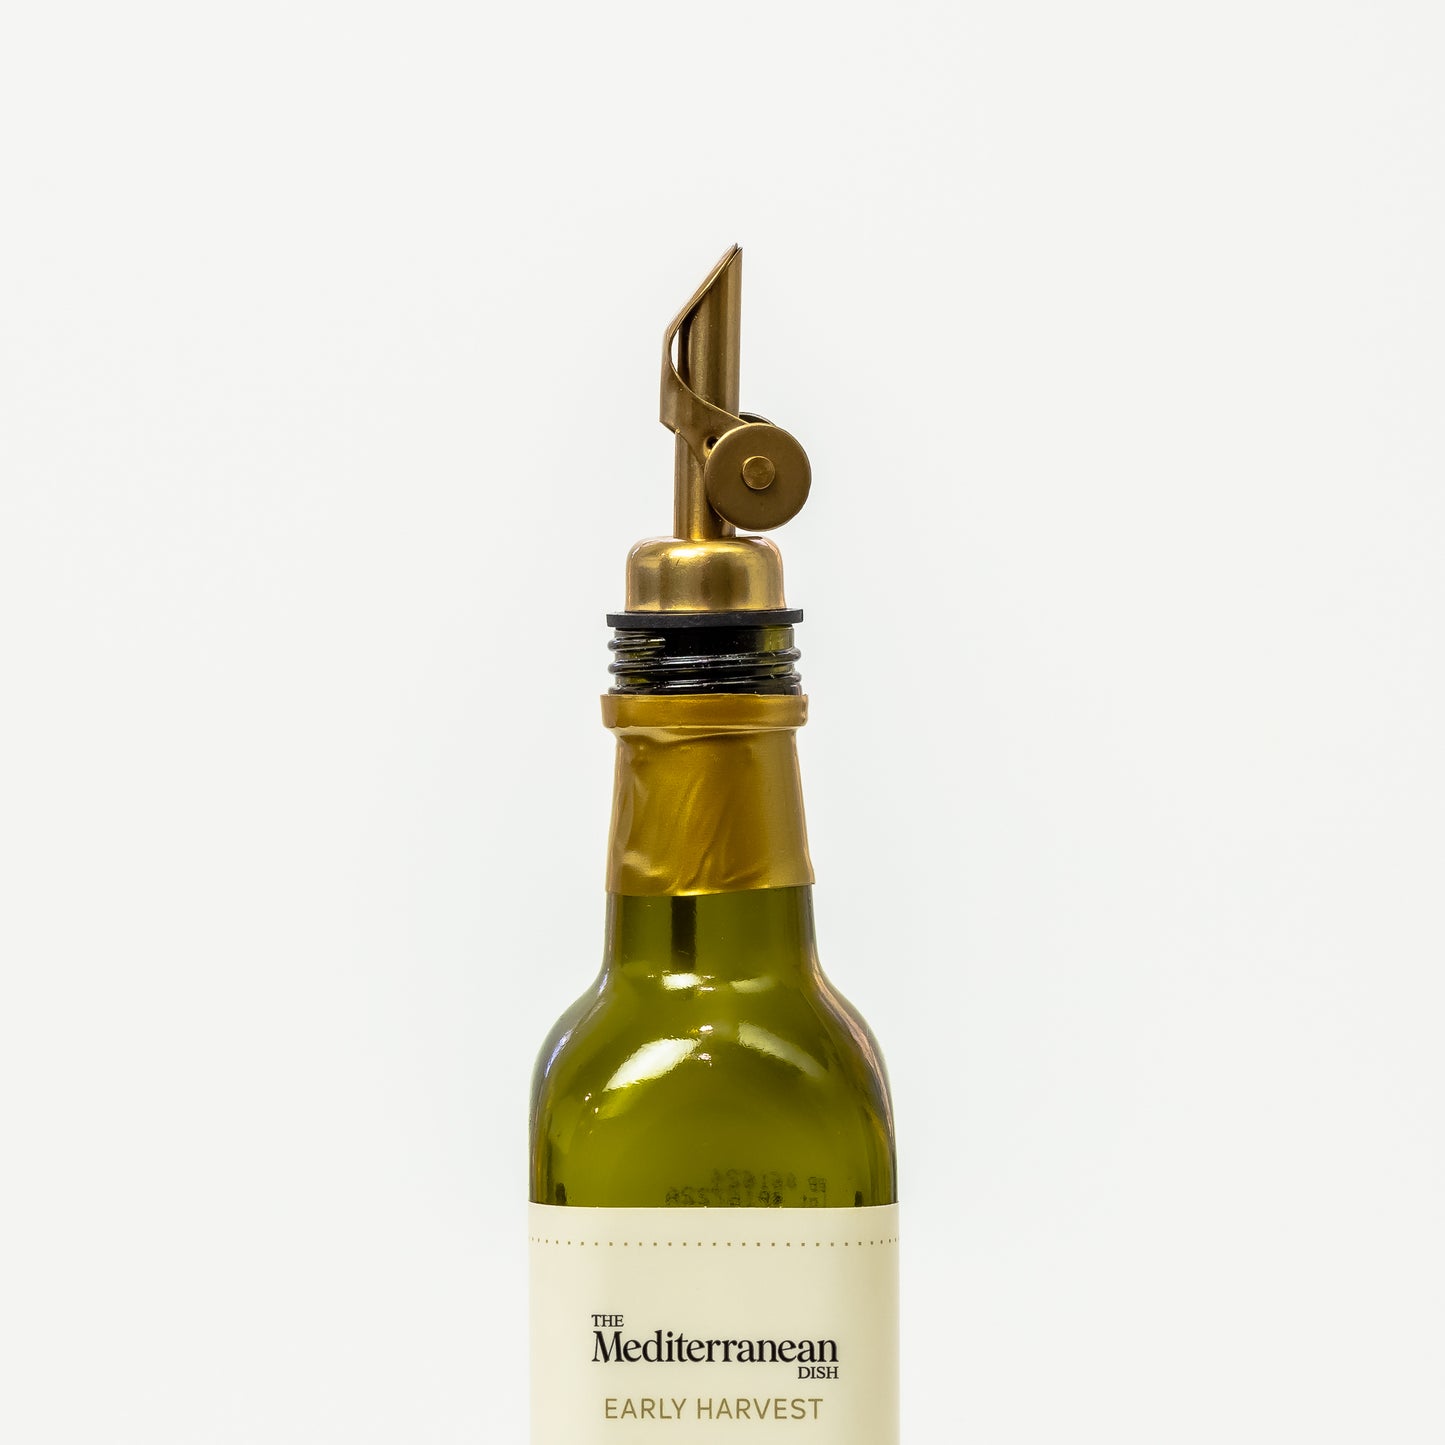 A premium olive oil pour spout - gold